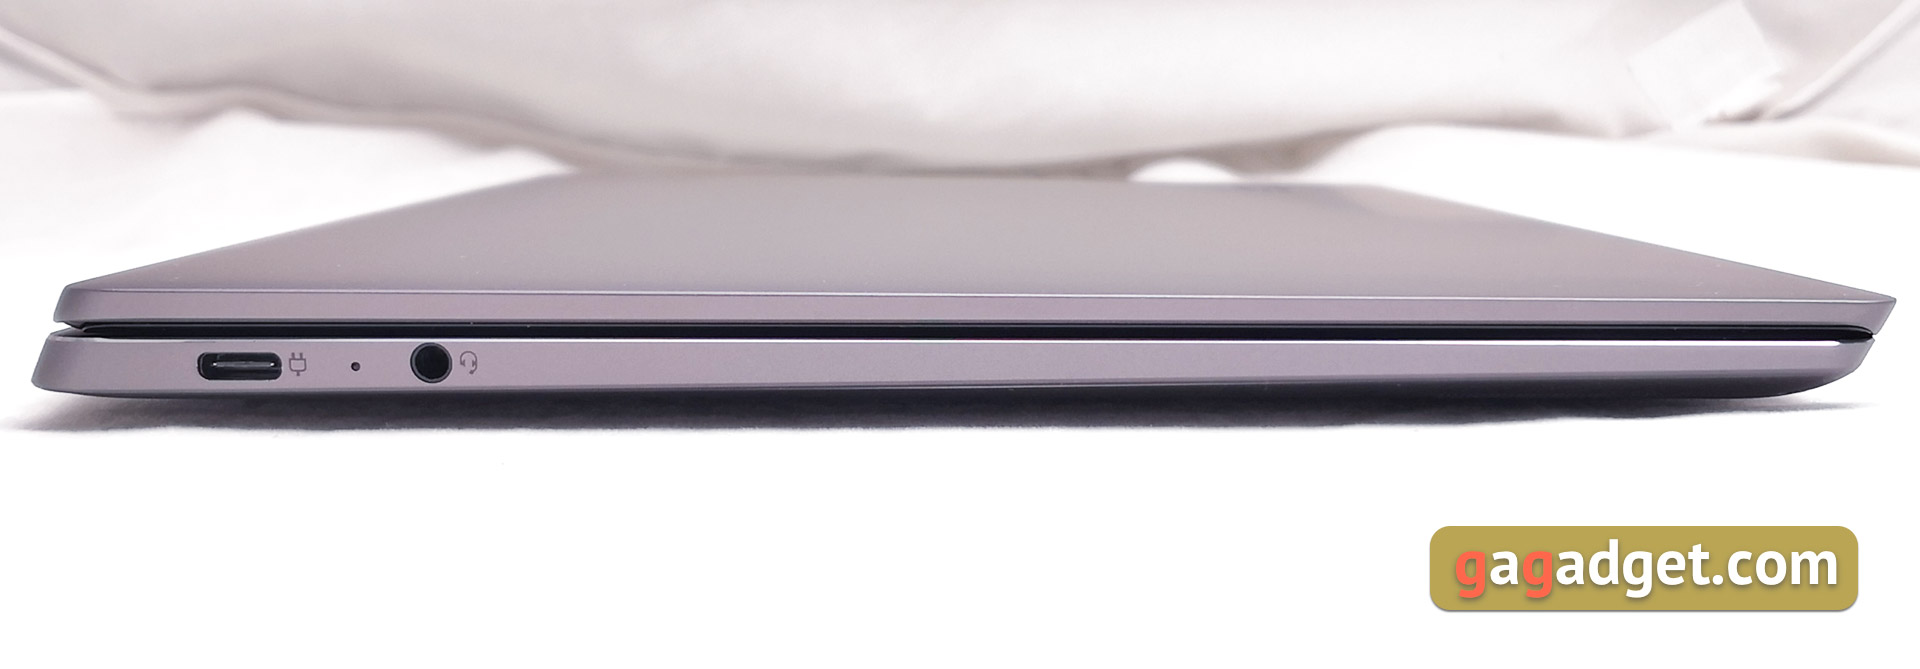 Обзор Lenovo Yoga S940: теперь не трансформер, а имиджевый ультрабук-8